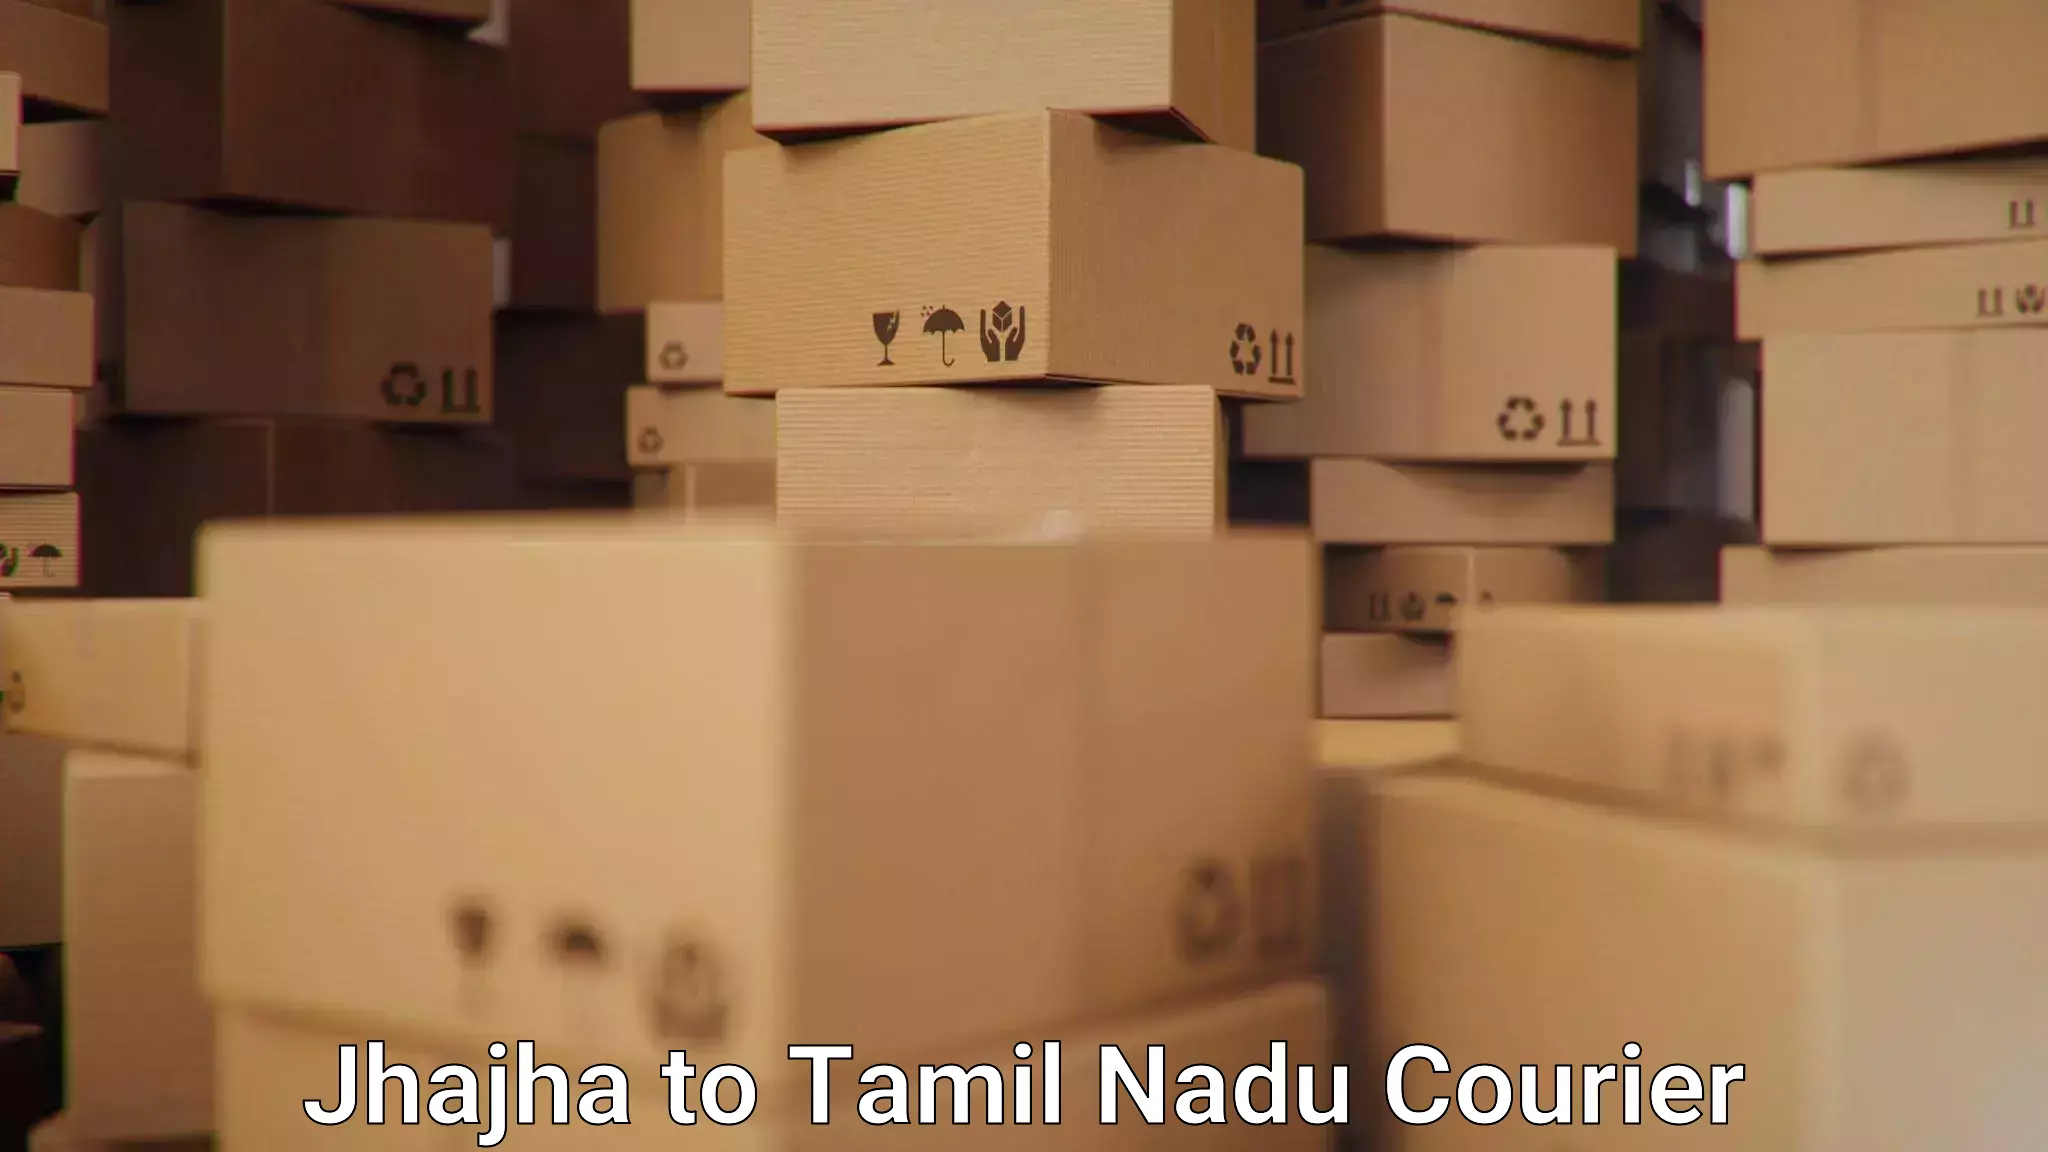 Courier service comparison Jhajha to Madurai